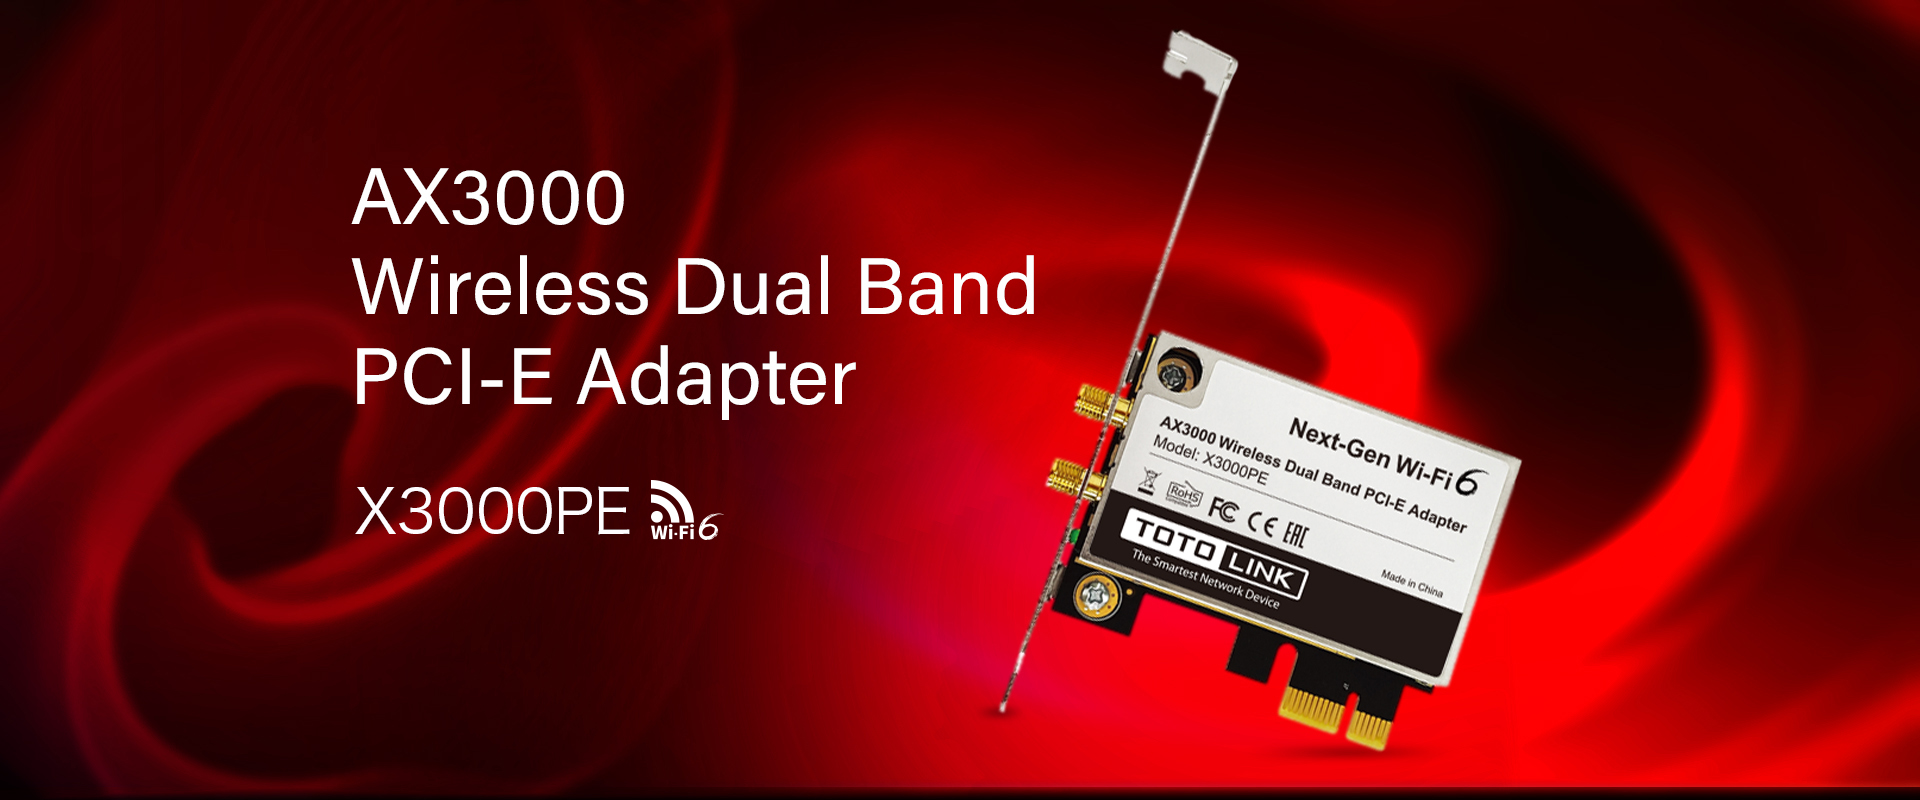 x3000pe-AX3000-Wireless-Dual-Band-PCI-E-Adapter